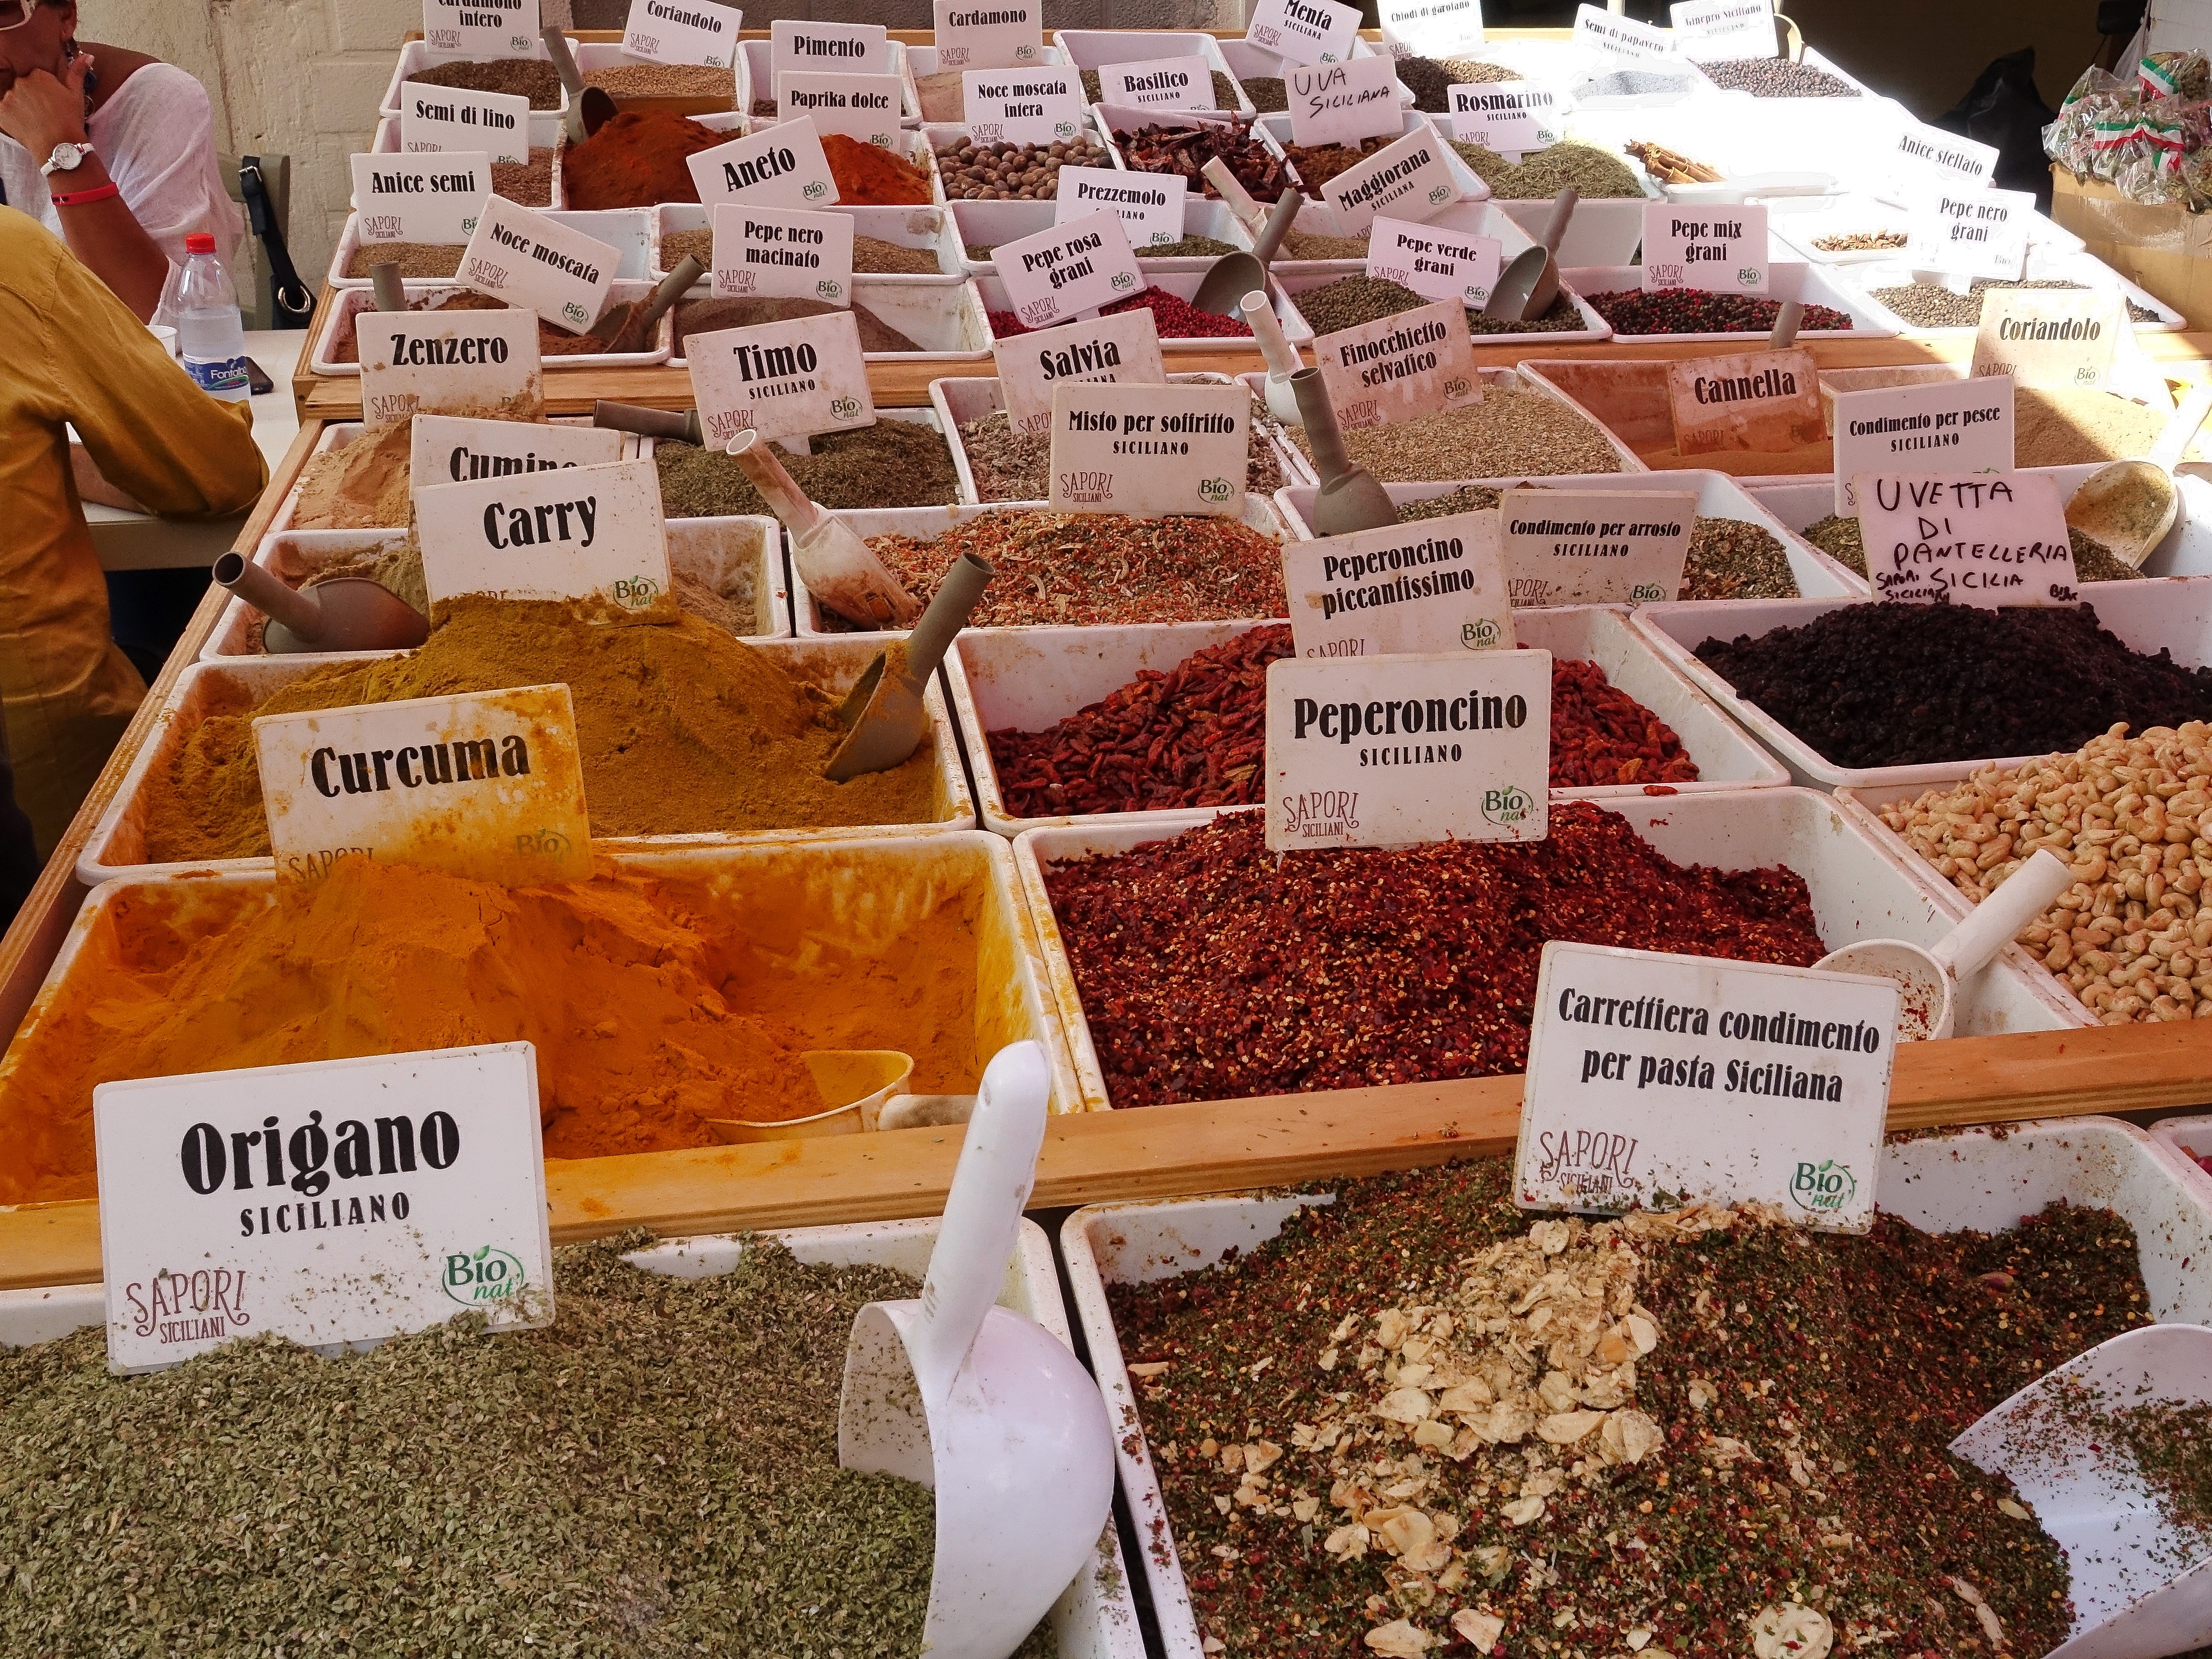 Spice bazaar